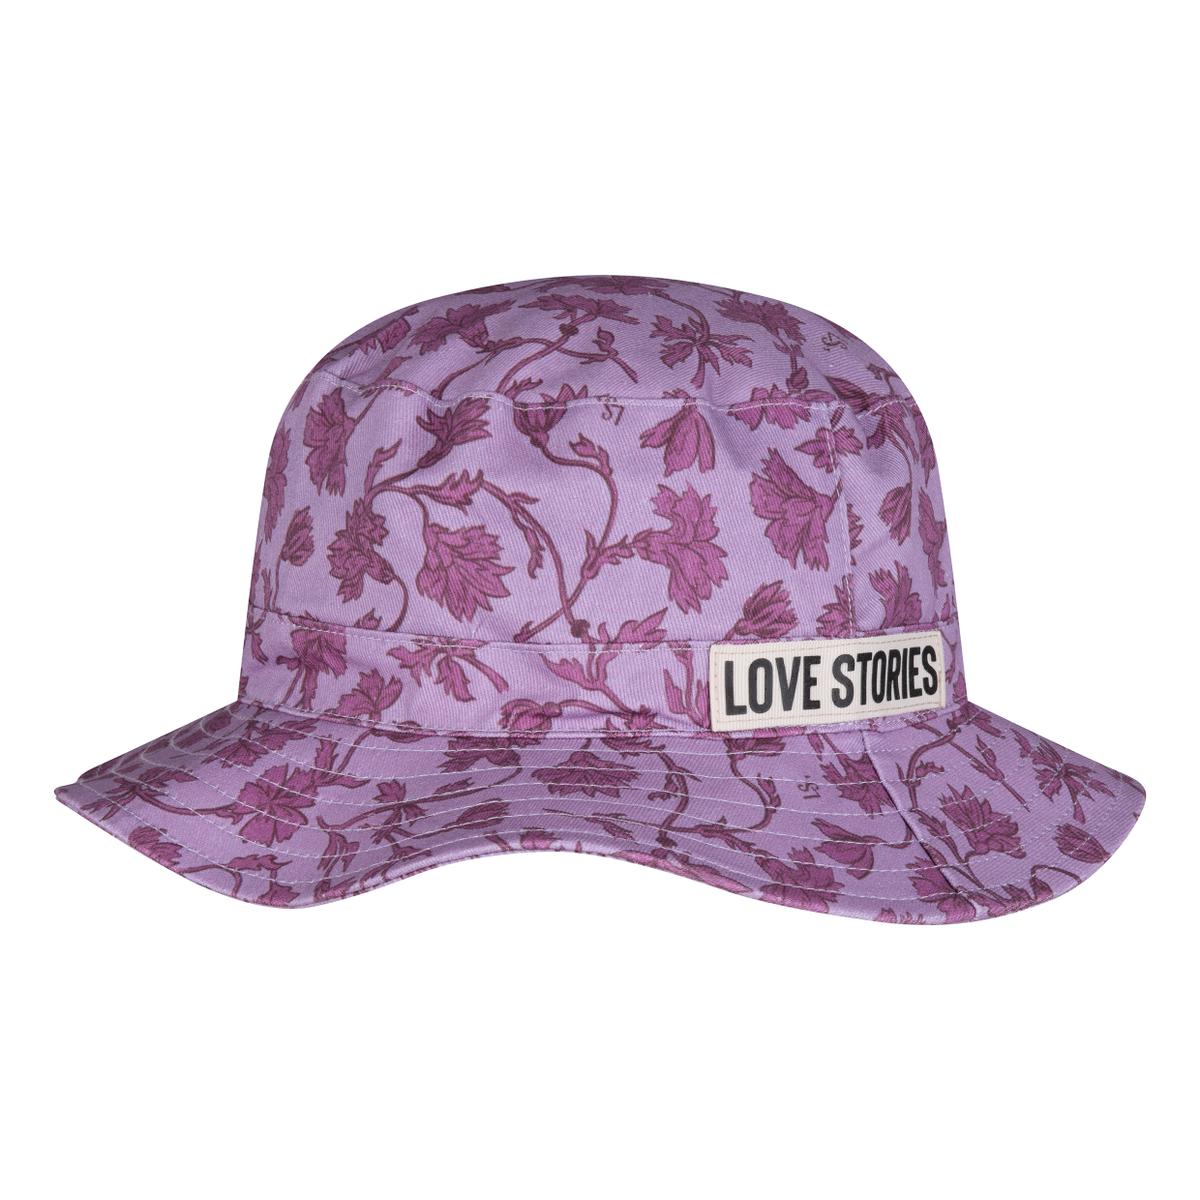 Love stories Bucket Hat